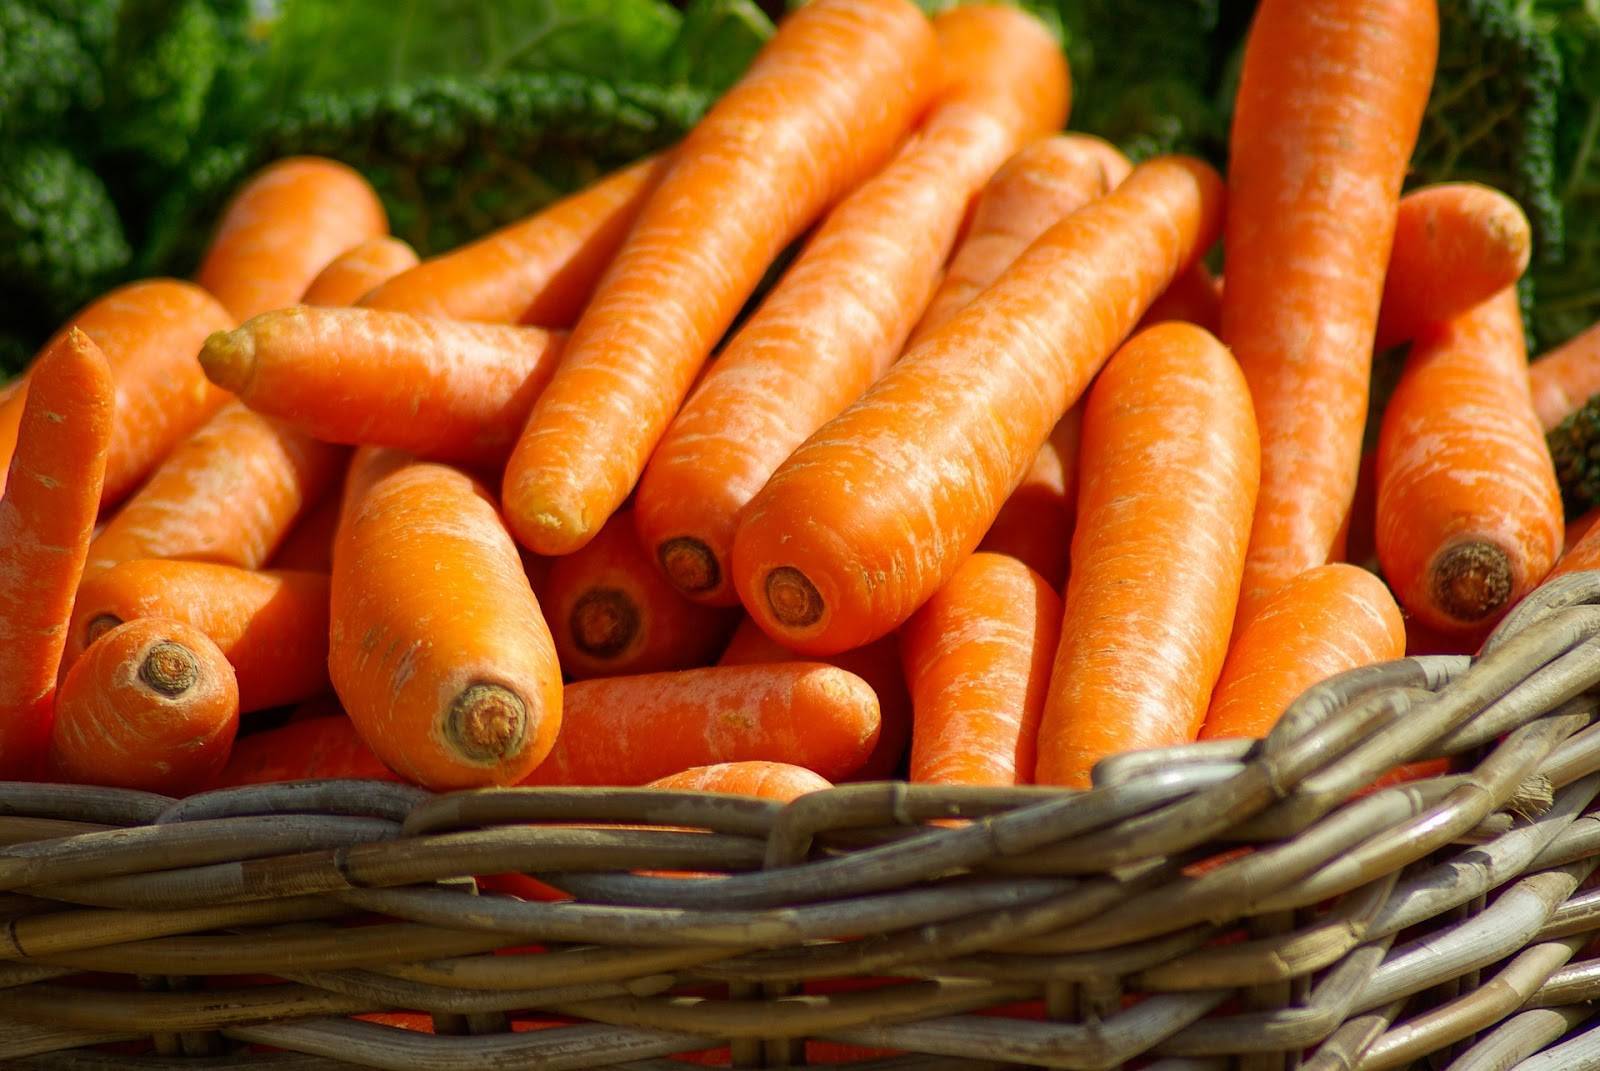 Морковь наполи f1 — описание сорта, фото, отзывы, посадка и уход